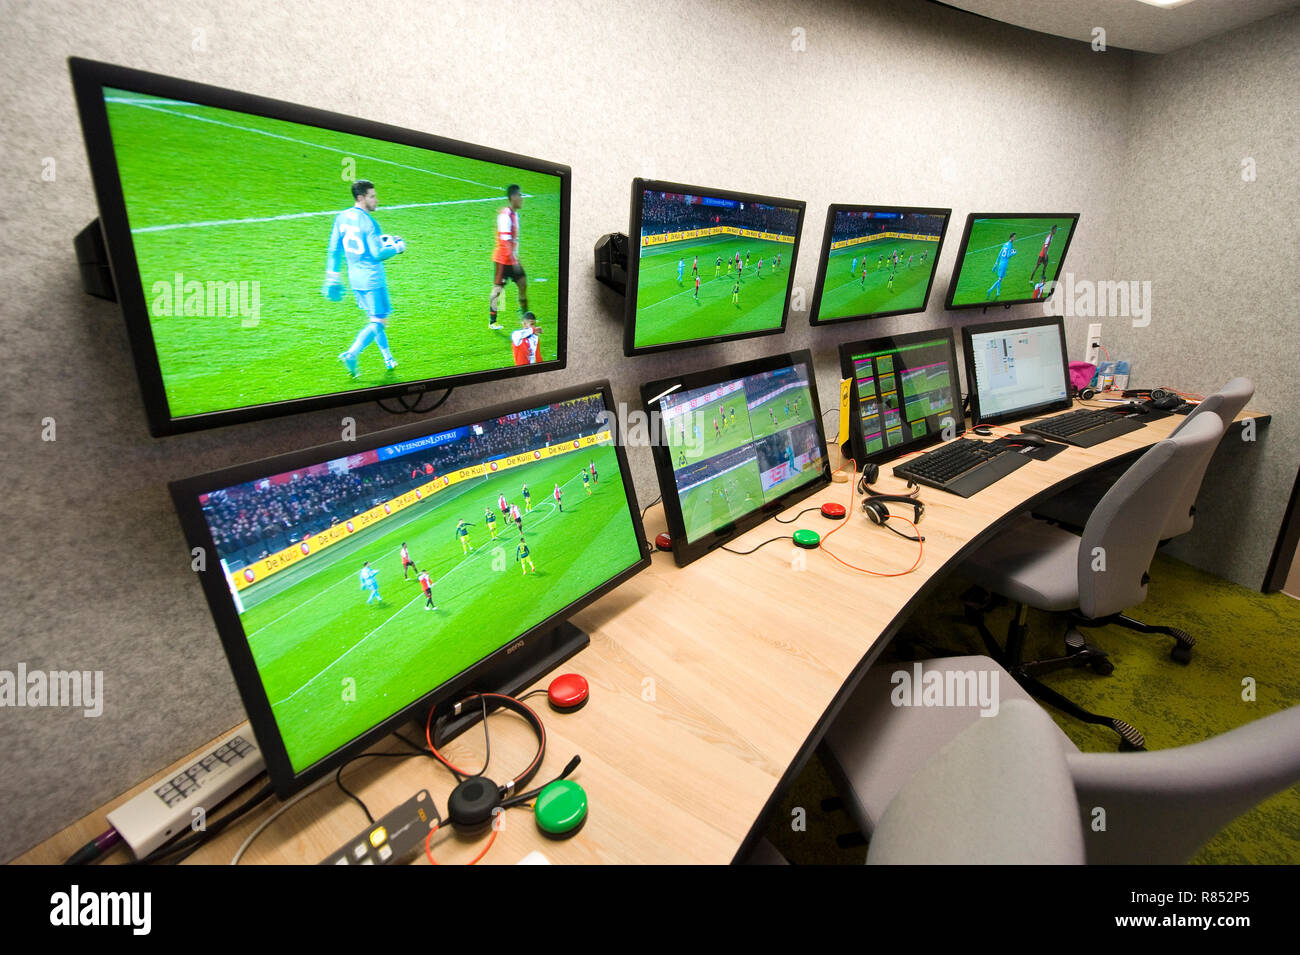 El Centro de Reproducción KNVB 'Aragón' en la sede de la federación de fútbol holandés es la habitación donde el árbitro asistente VAR (vídeo) está trabajando. Foto de stock